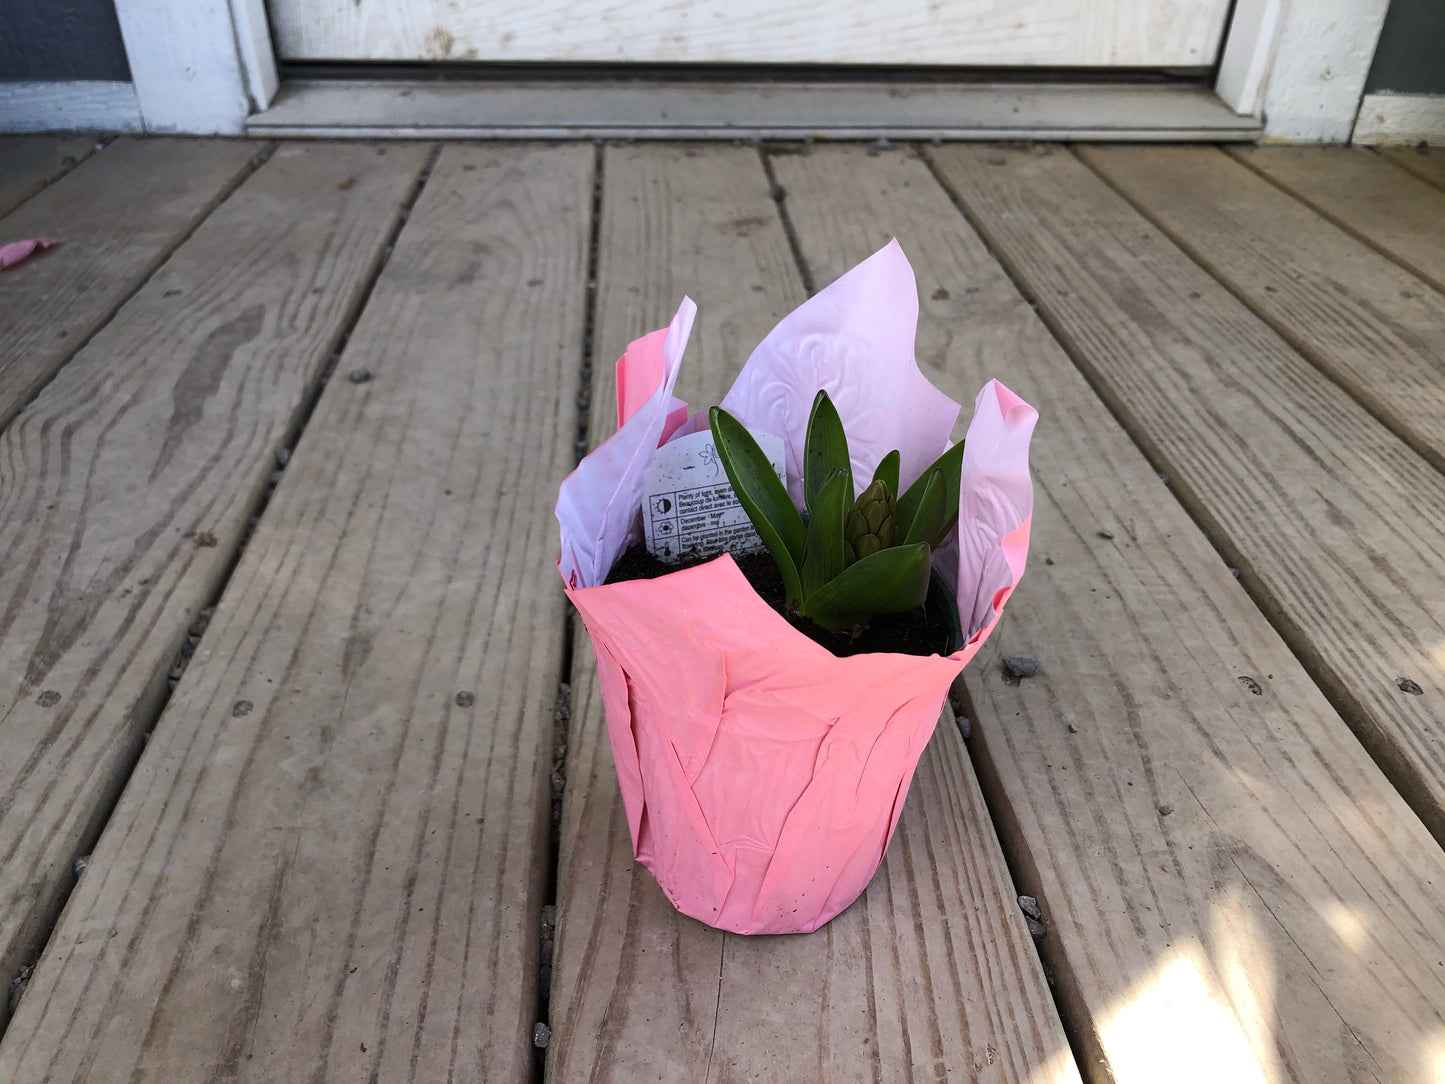 4” Hyacinth Bulbs